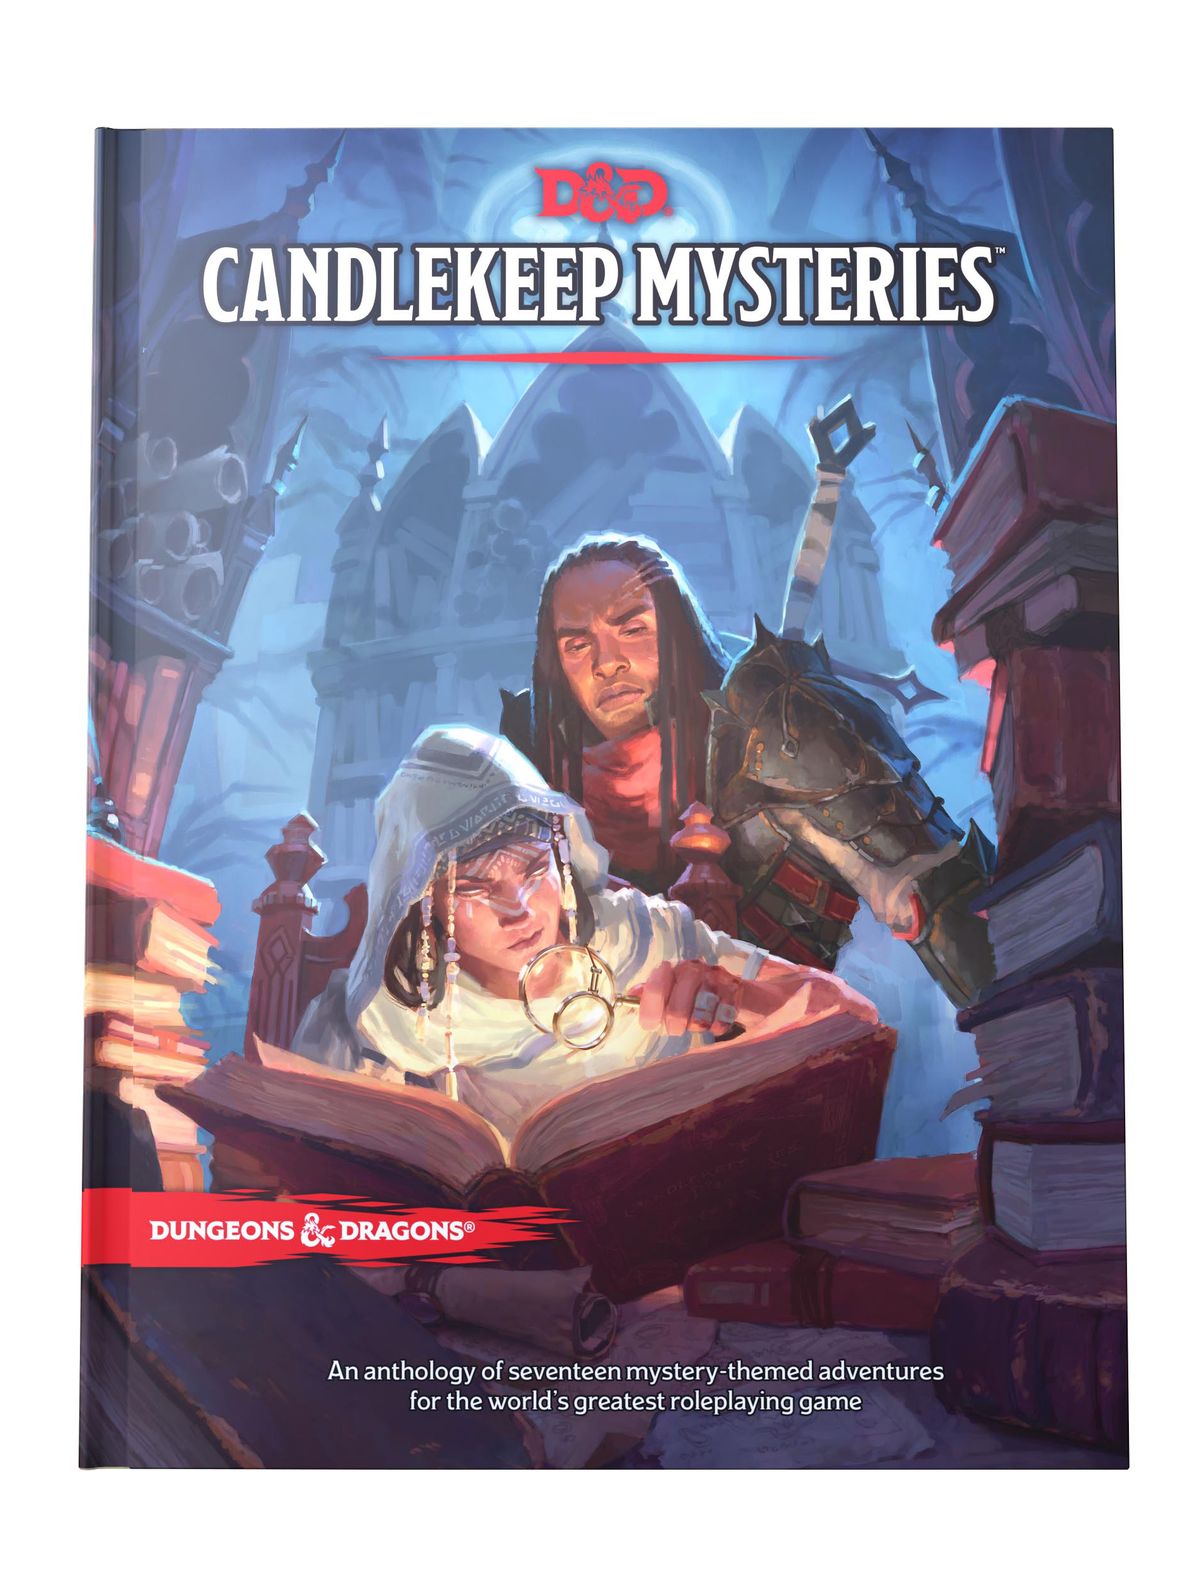 Gli avventurieri scrutano un libro con una lente d'ingrandimento nel profondo dei confini oscuri di Candlekeep, a Baldur's Gate.